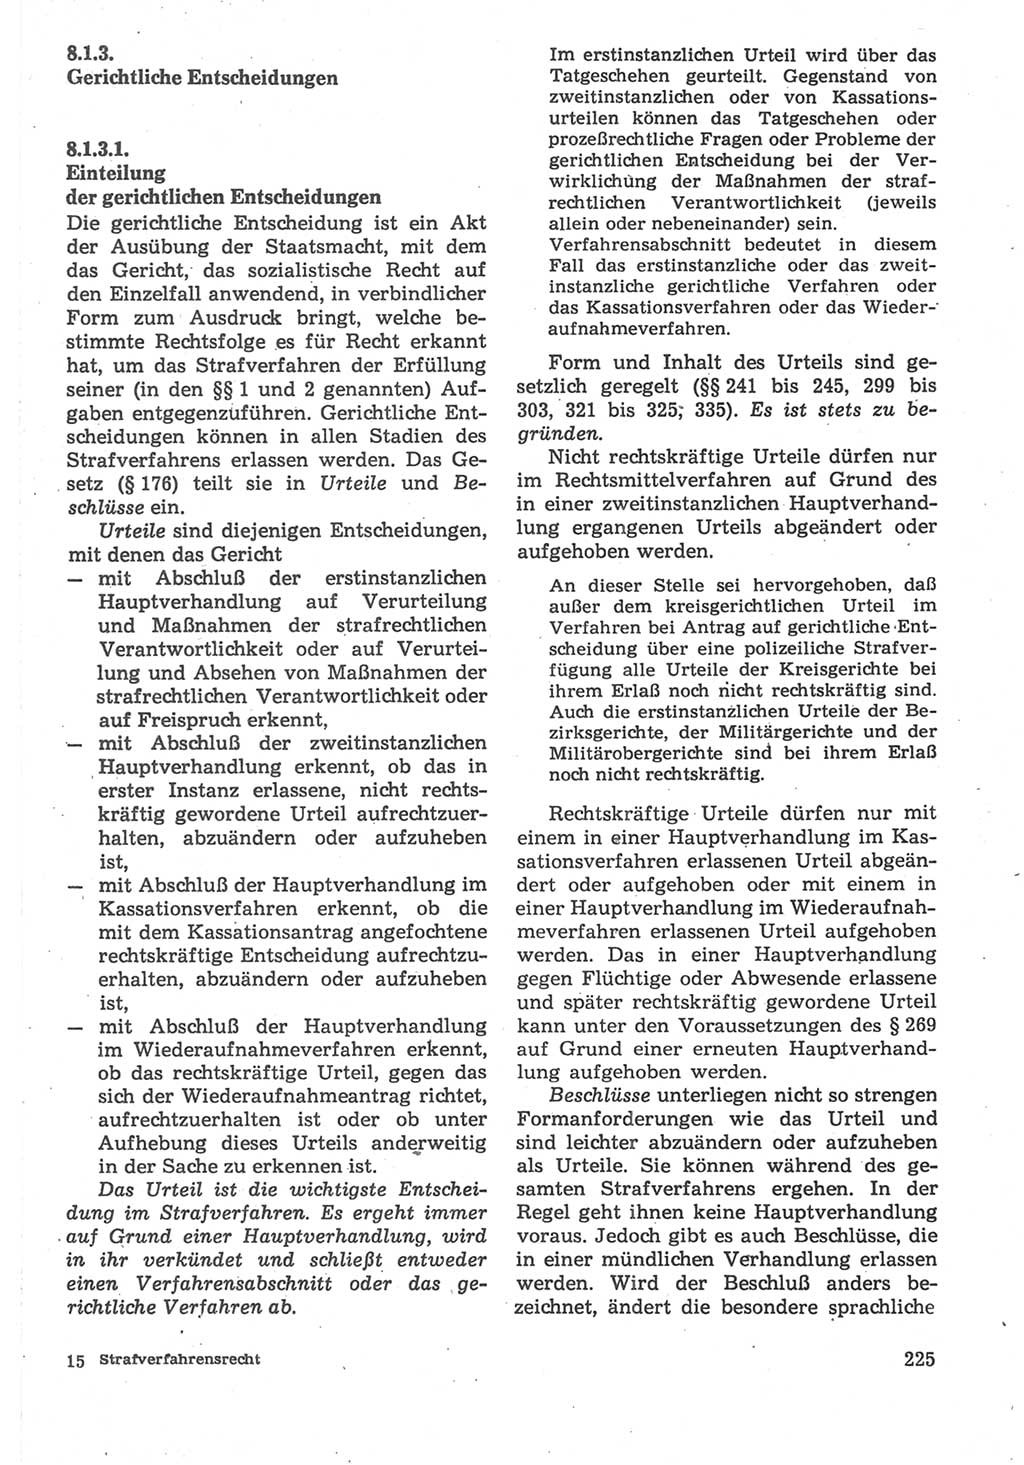 Strafverfahrensrecht [Deutsche Demokratische Republik (DDR)], Lehrbuch 1987, Seite 225 (Strafverf.-R. DDR Lb. 1987, S. 225)